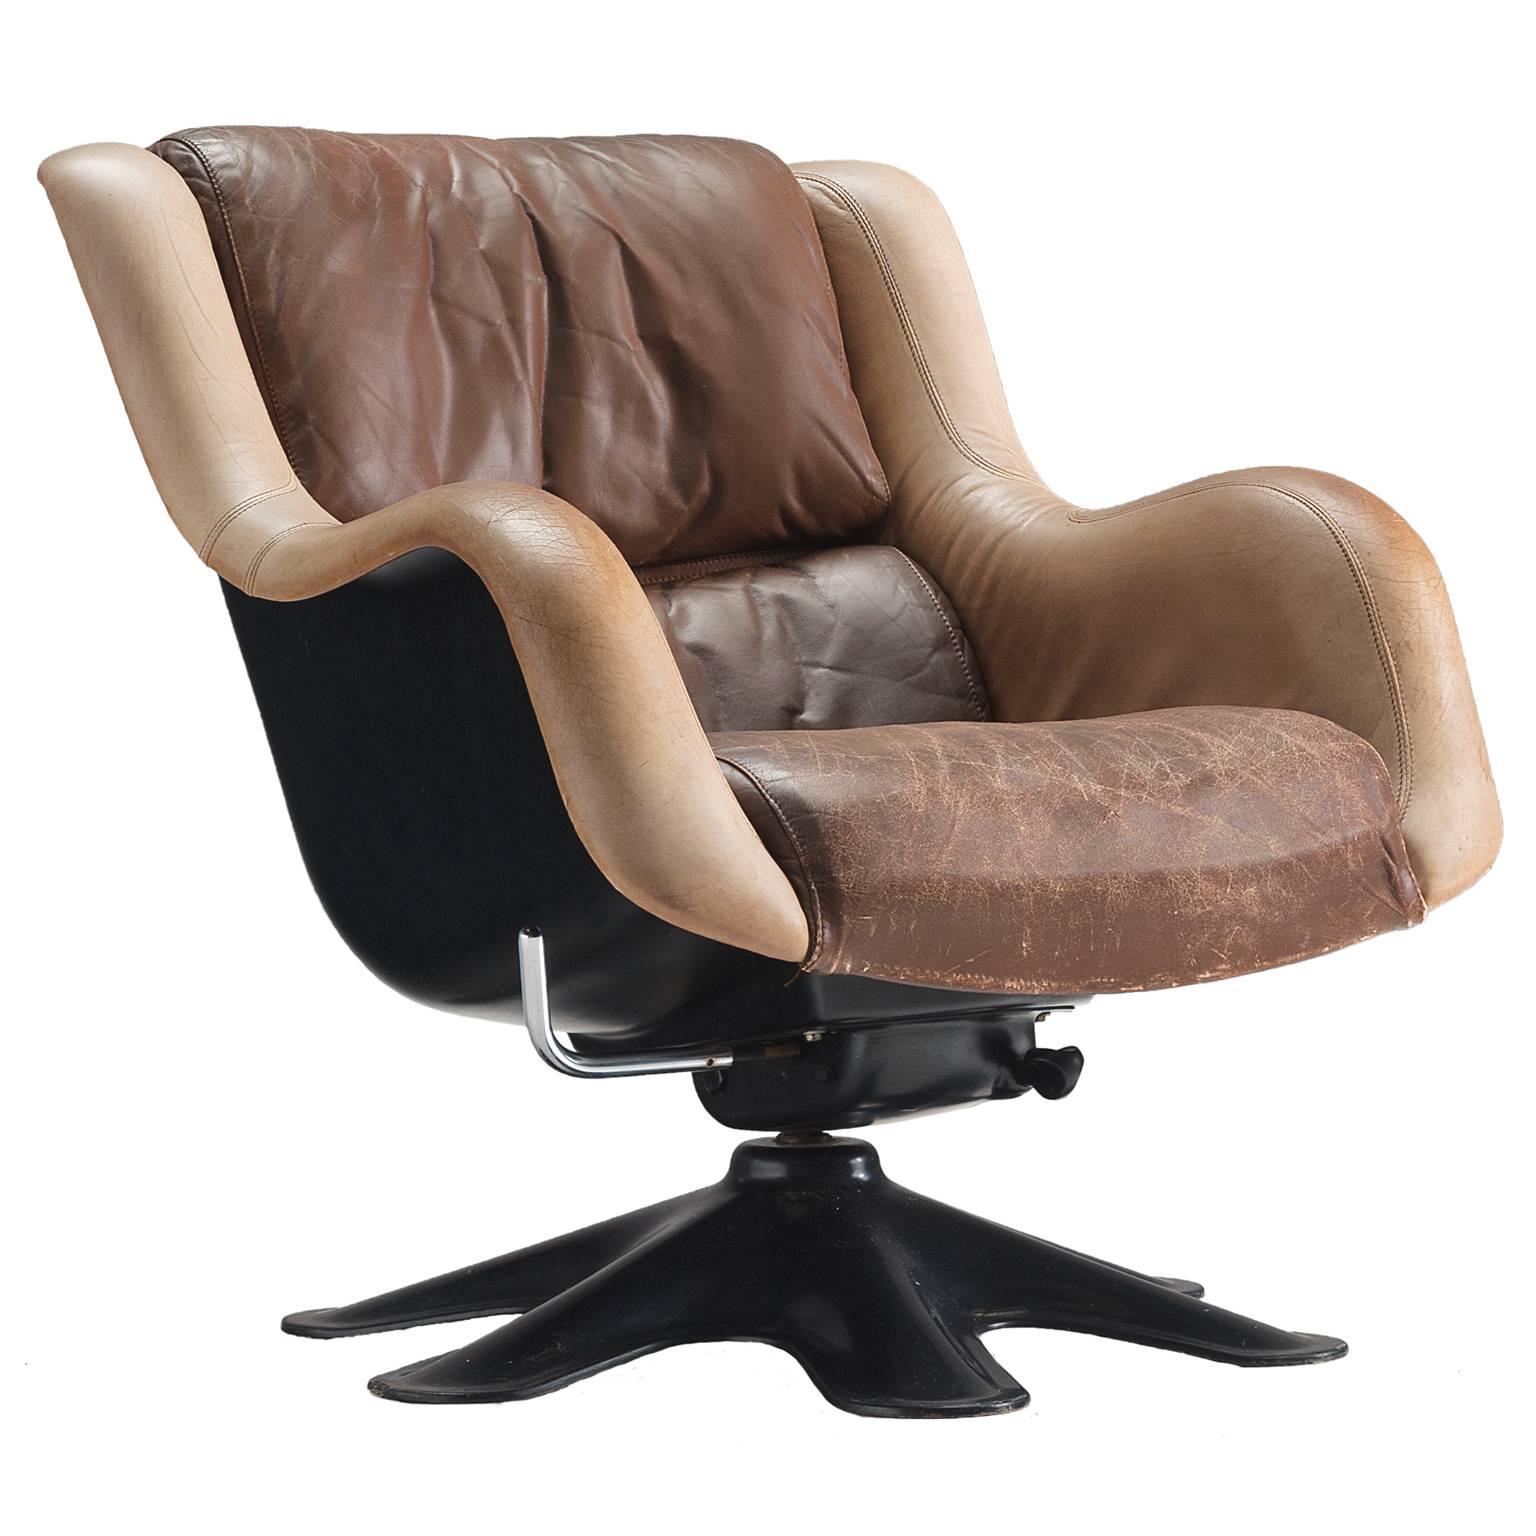 Yrjo Kukkapuro 'Karuselli' Lounge Chair in Brown Leather Upholstery